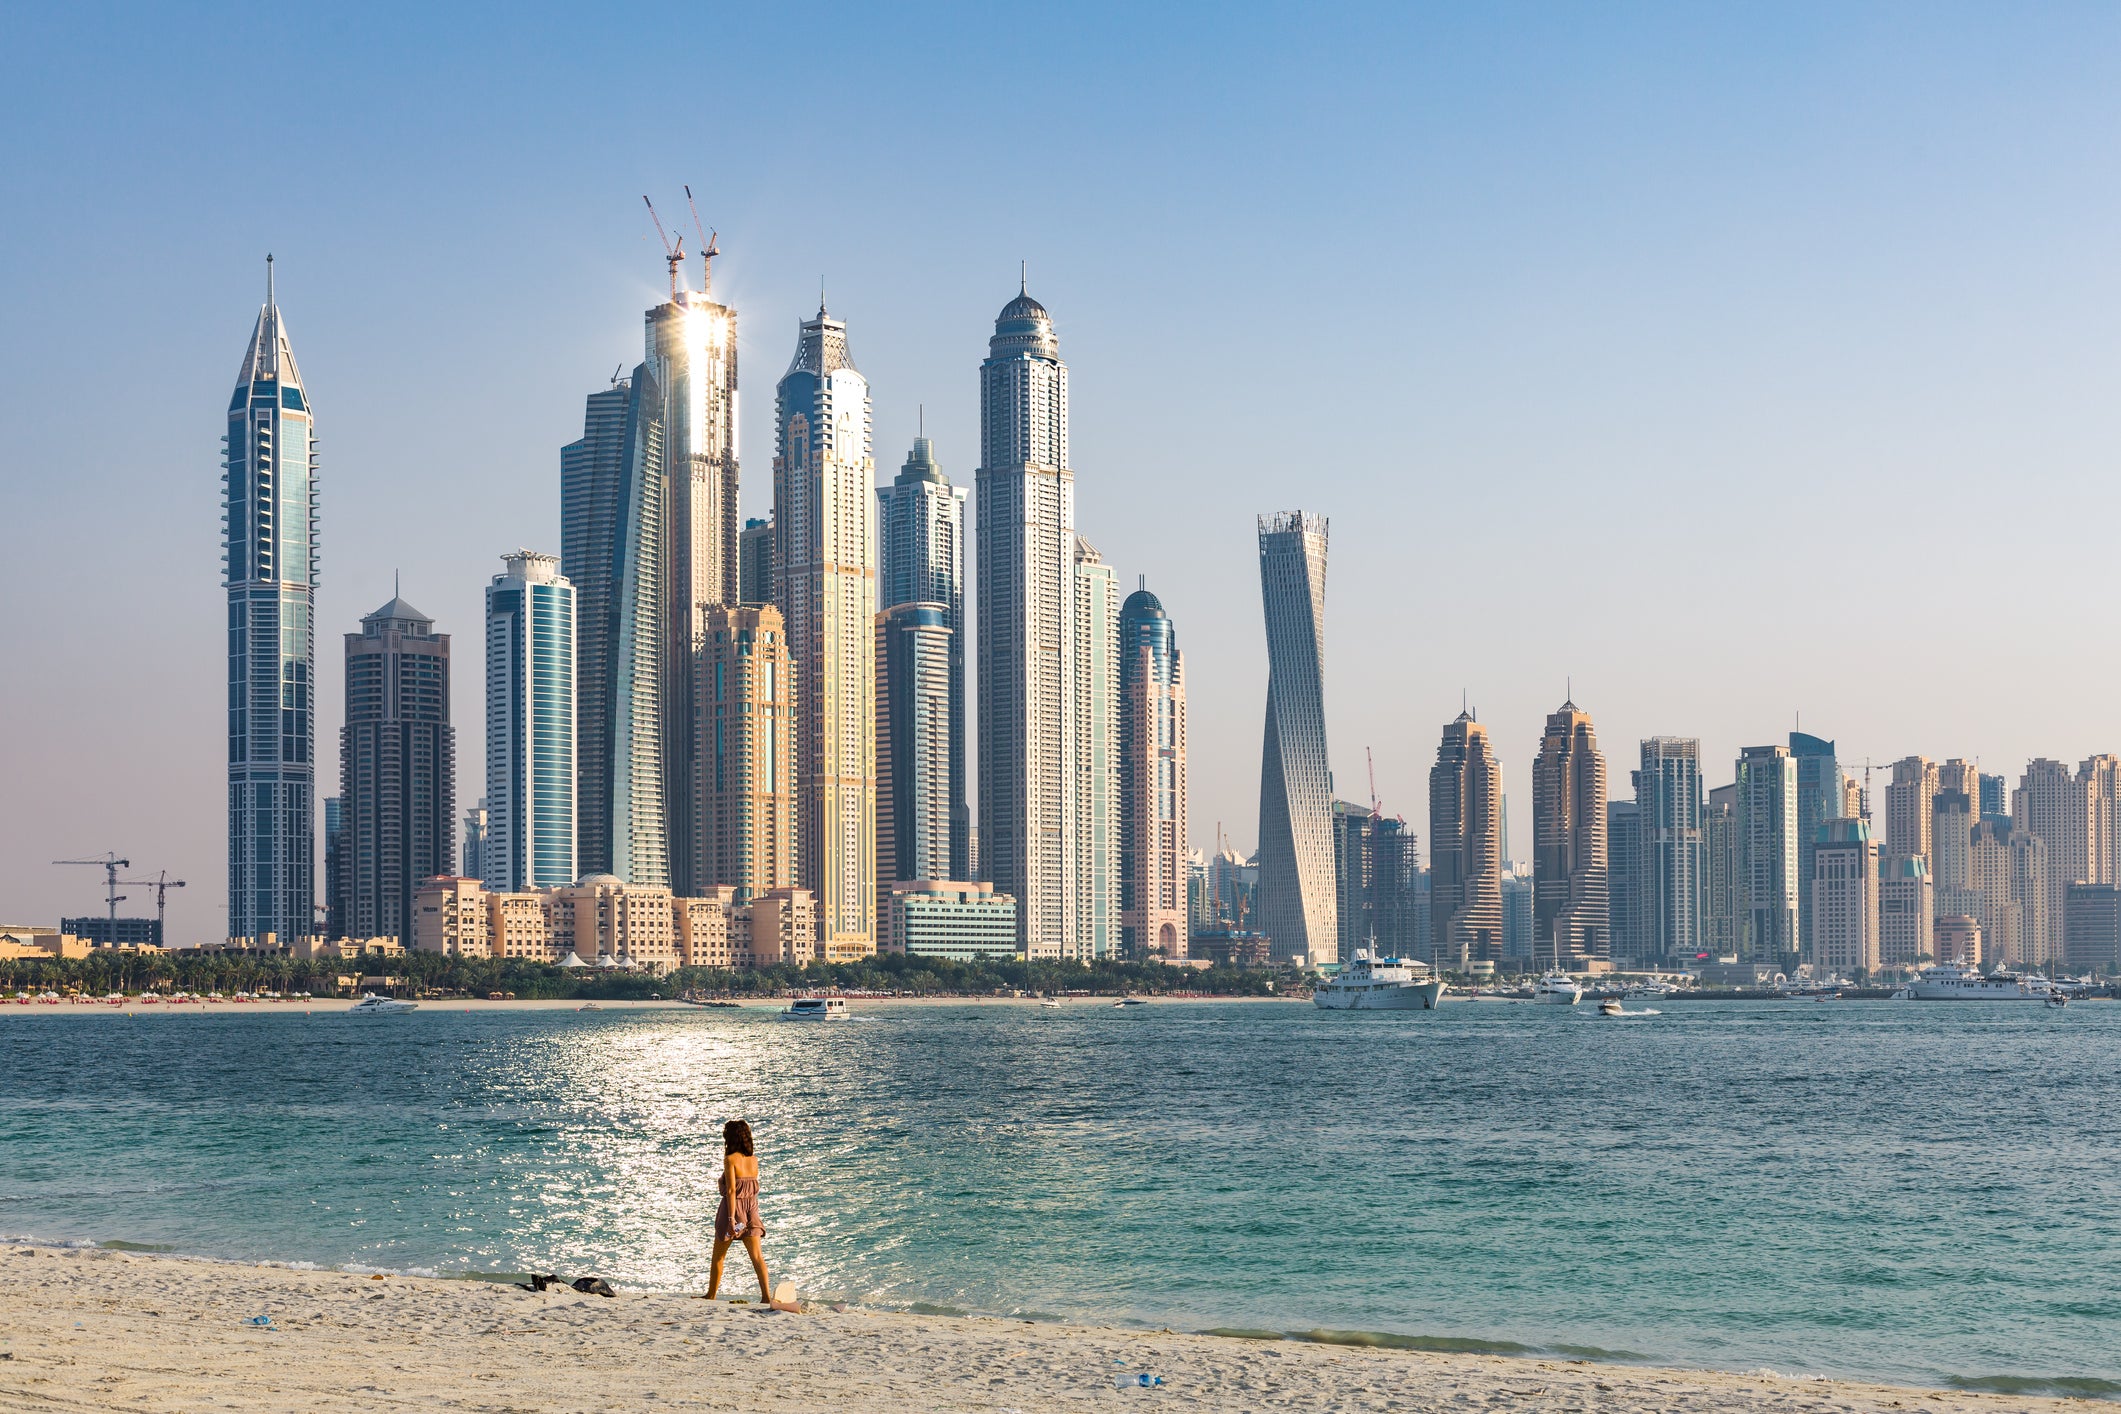 Woman walking on beach in front of Dubai skyline